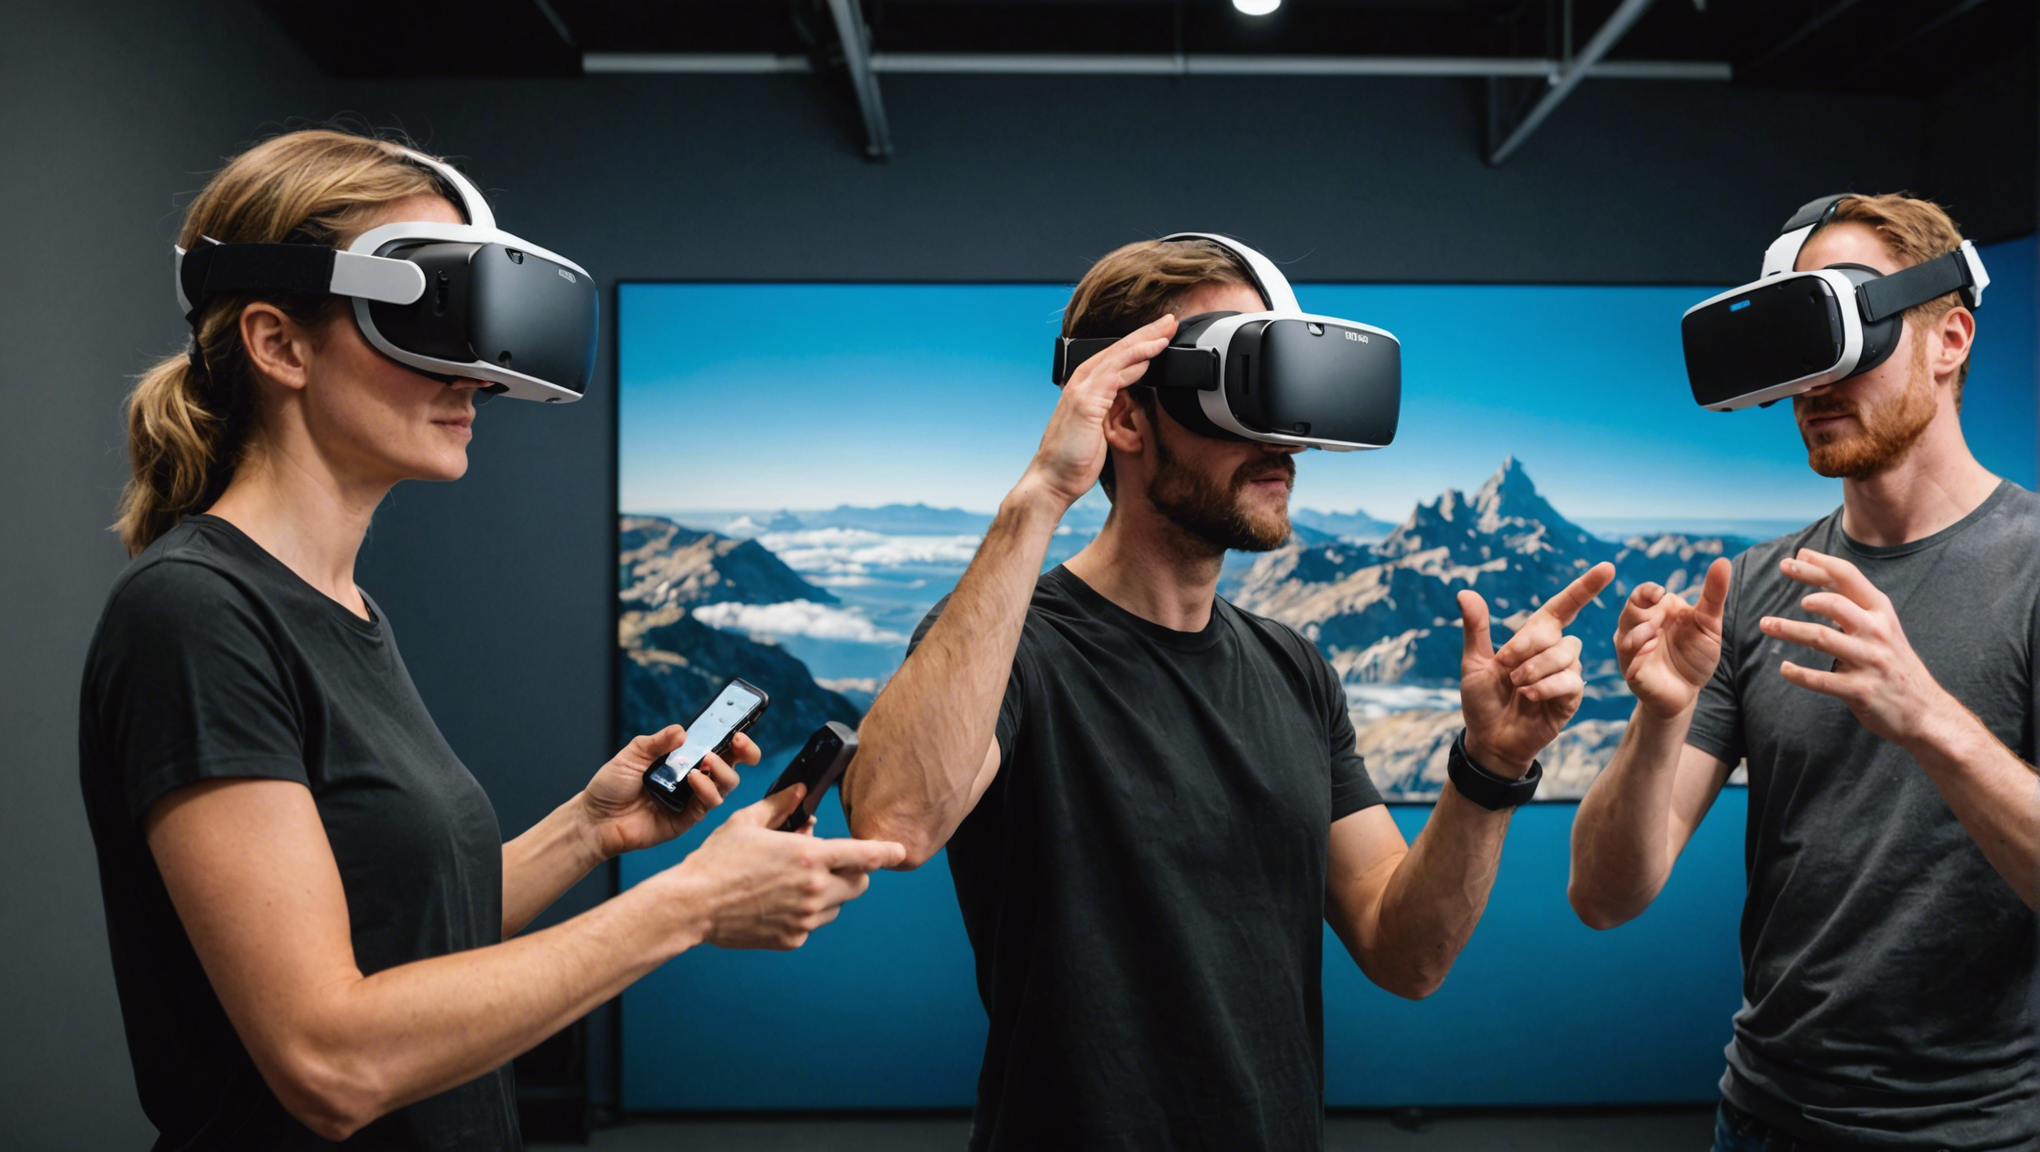 découvrez les expériences multijoueurs en réalité virtuelle et plongez dans un nouvel horizon ludique. jouez en vr avec vos amis et vivez des aventures immersives ensemble.